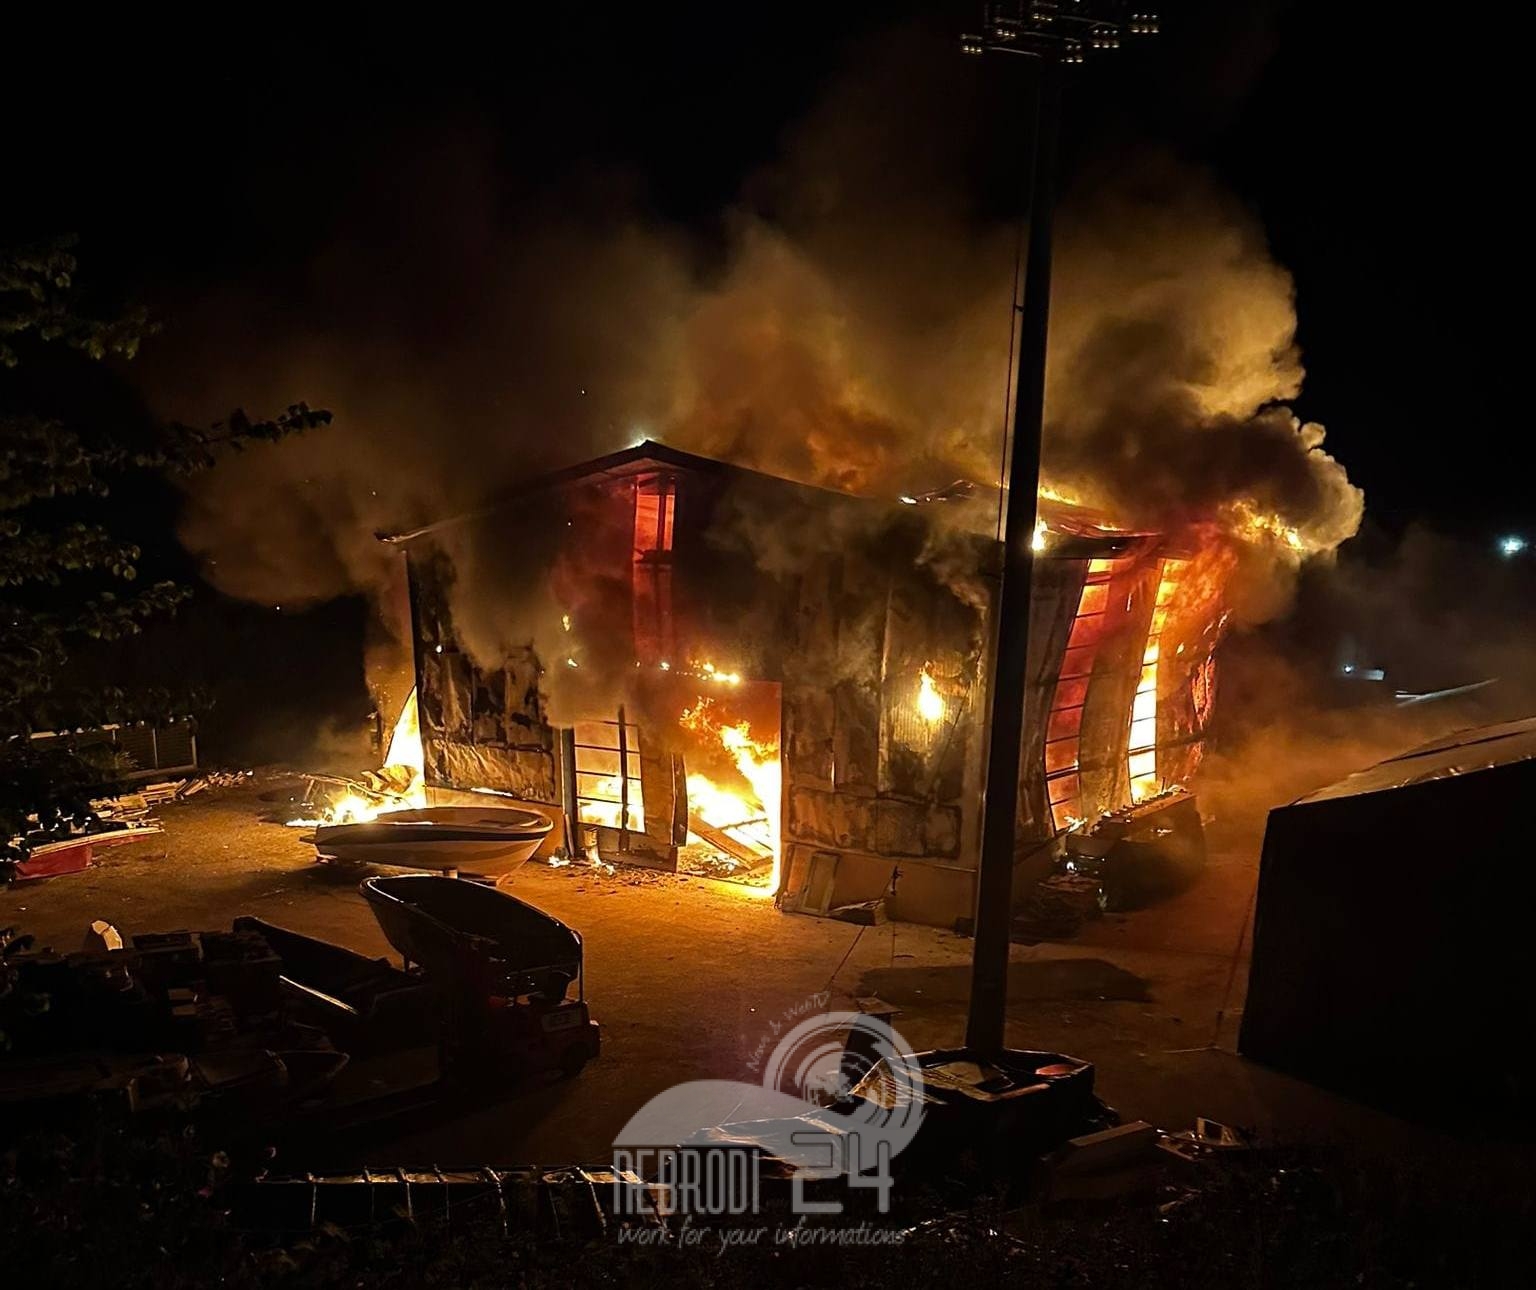 San Piero Patti  – Incendio nell’area industriale in un capannone utilizzato per lavori di vetroresina